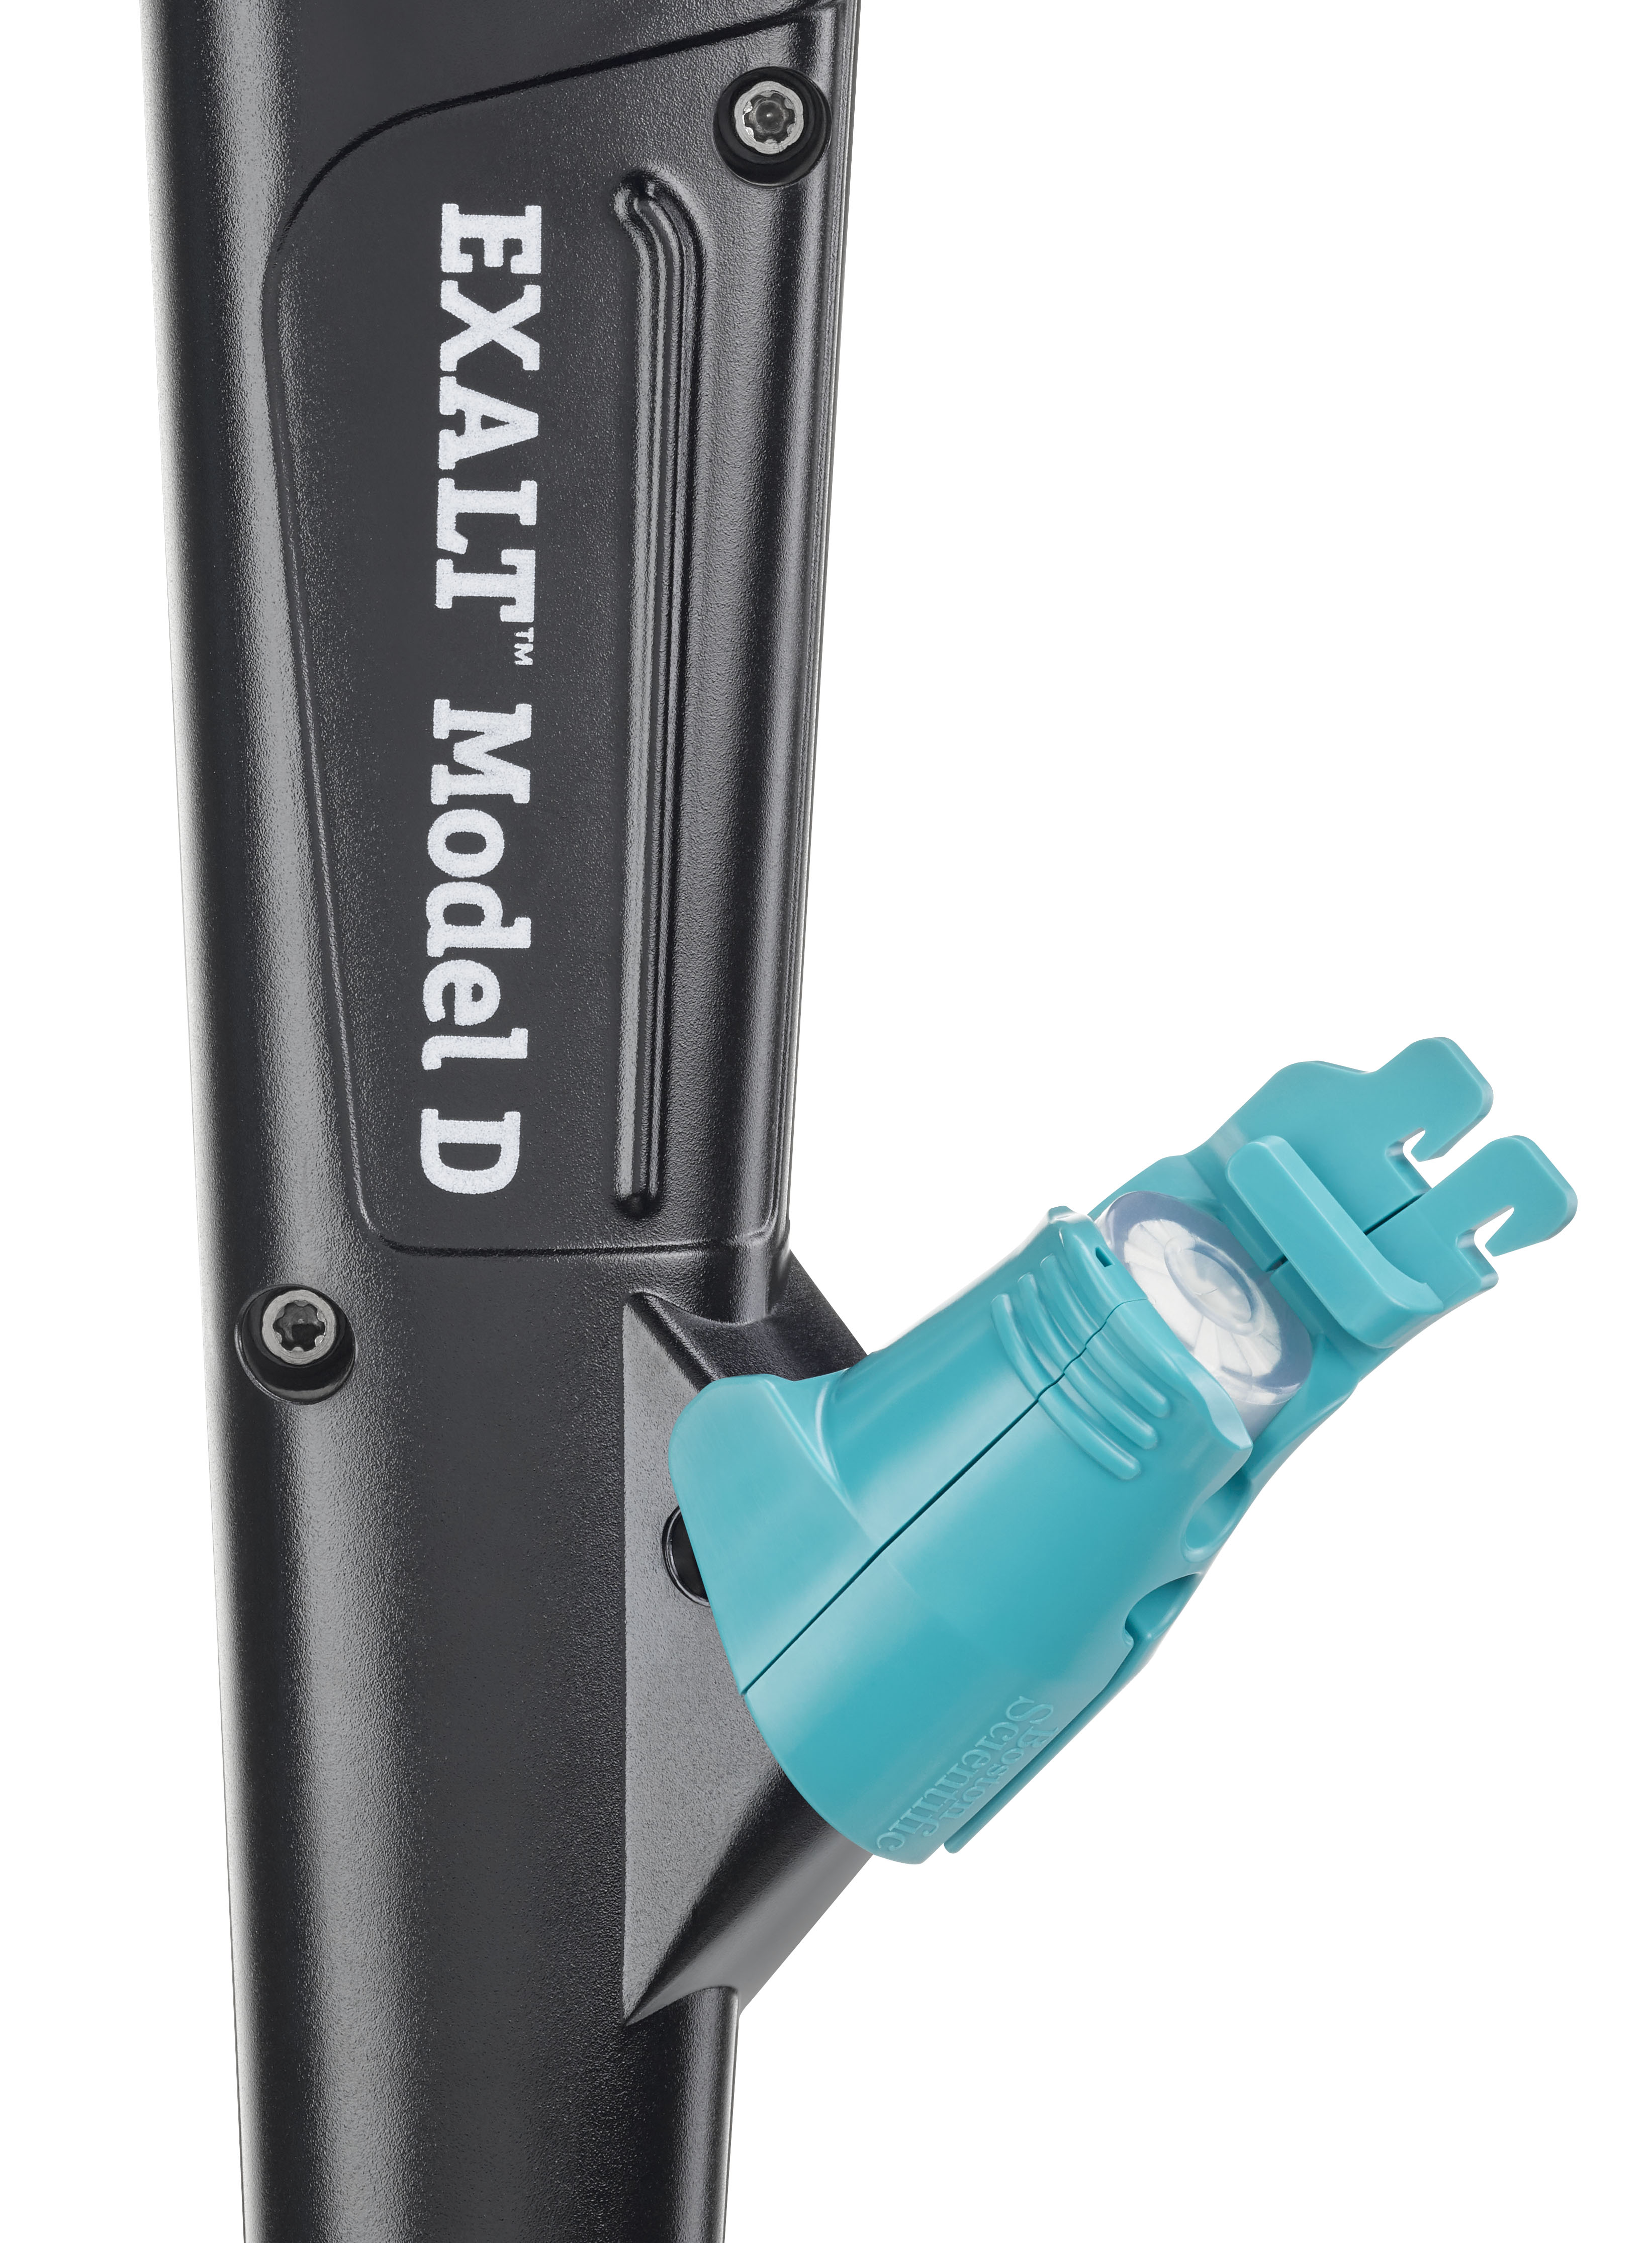  AutoCap RX EXALT™ Model D Compatible Integrated Biopsy